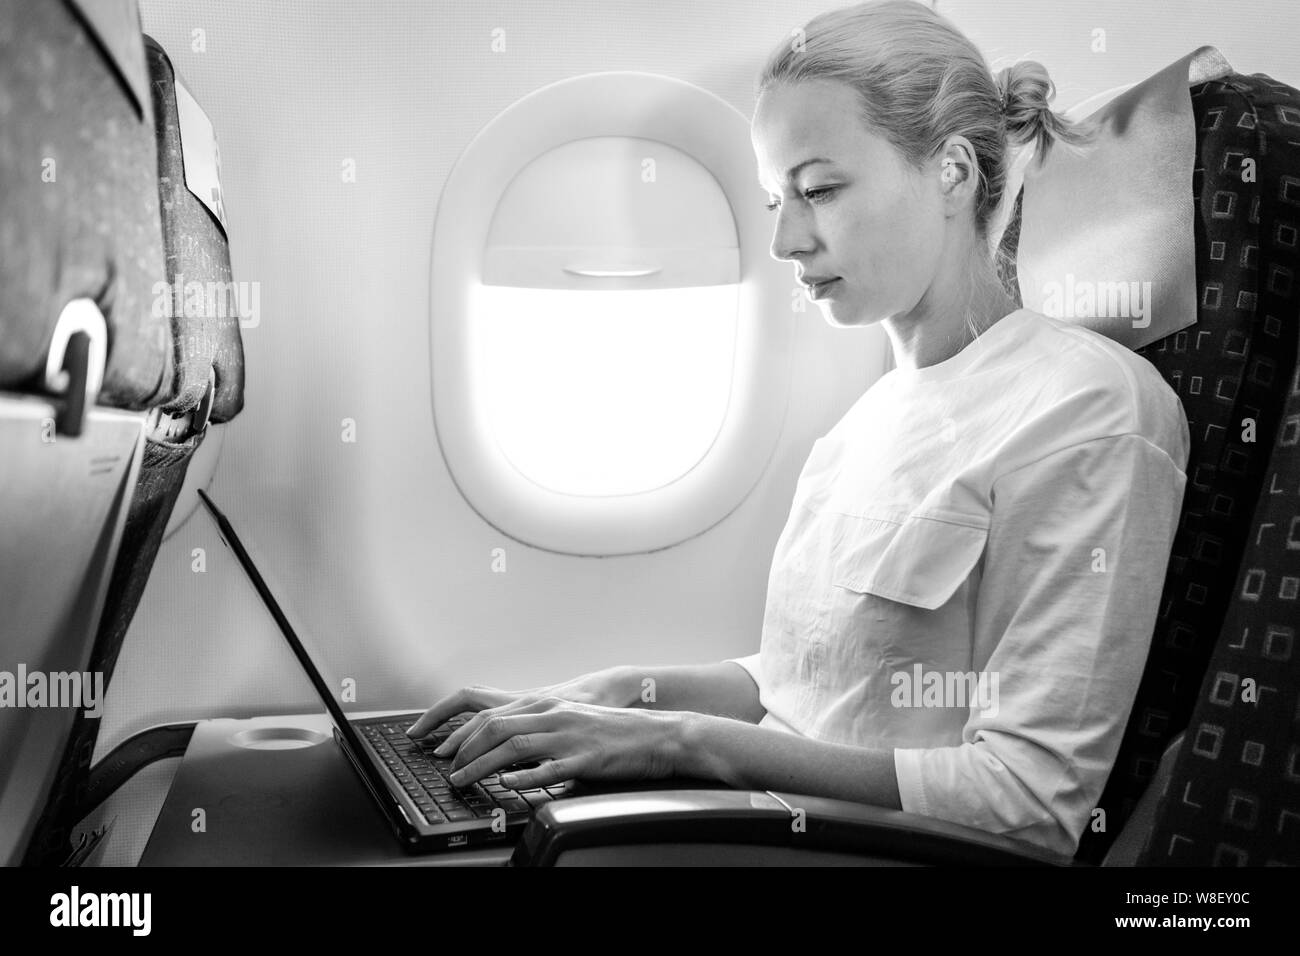 Jolie femme caucasienne travaillant au passager ordinateur portable moderne en utilisant la connexion sans fil à bord du vol de l'avion commercial Banque D'Images